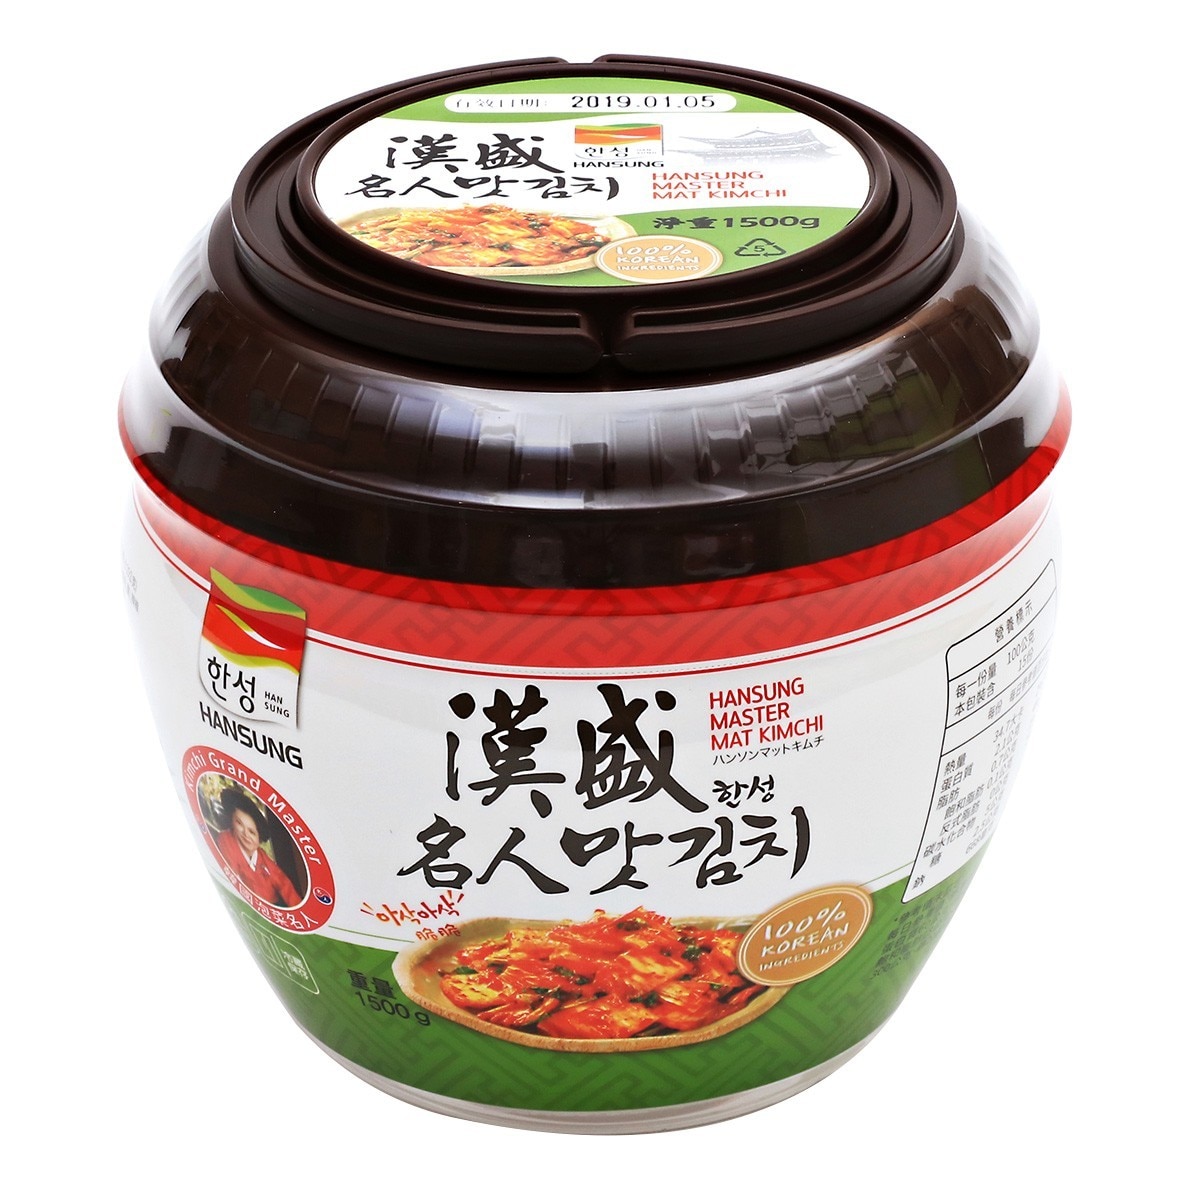 漢盛 泡菜切片罐裝 1.5公斤X 6罐